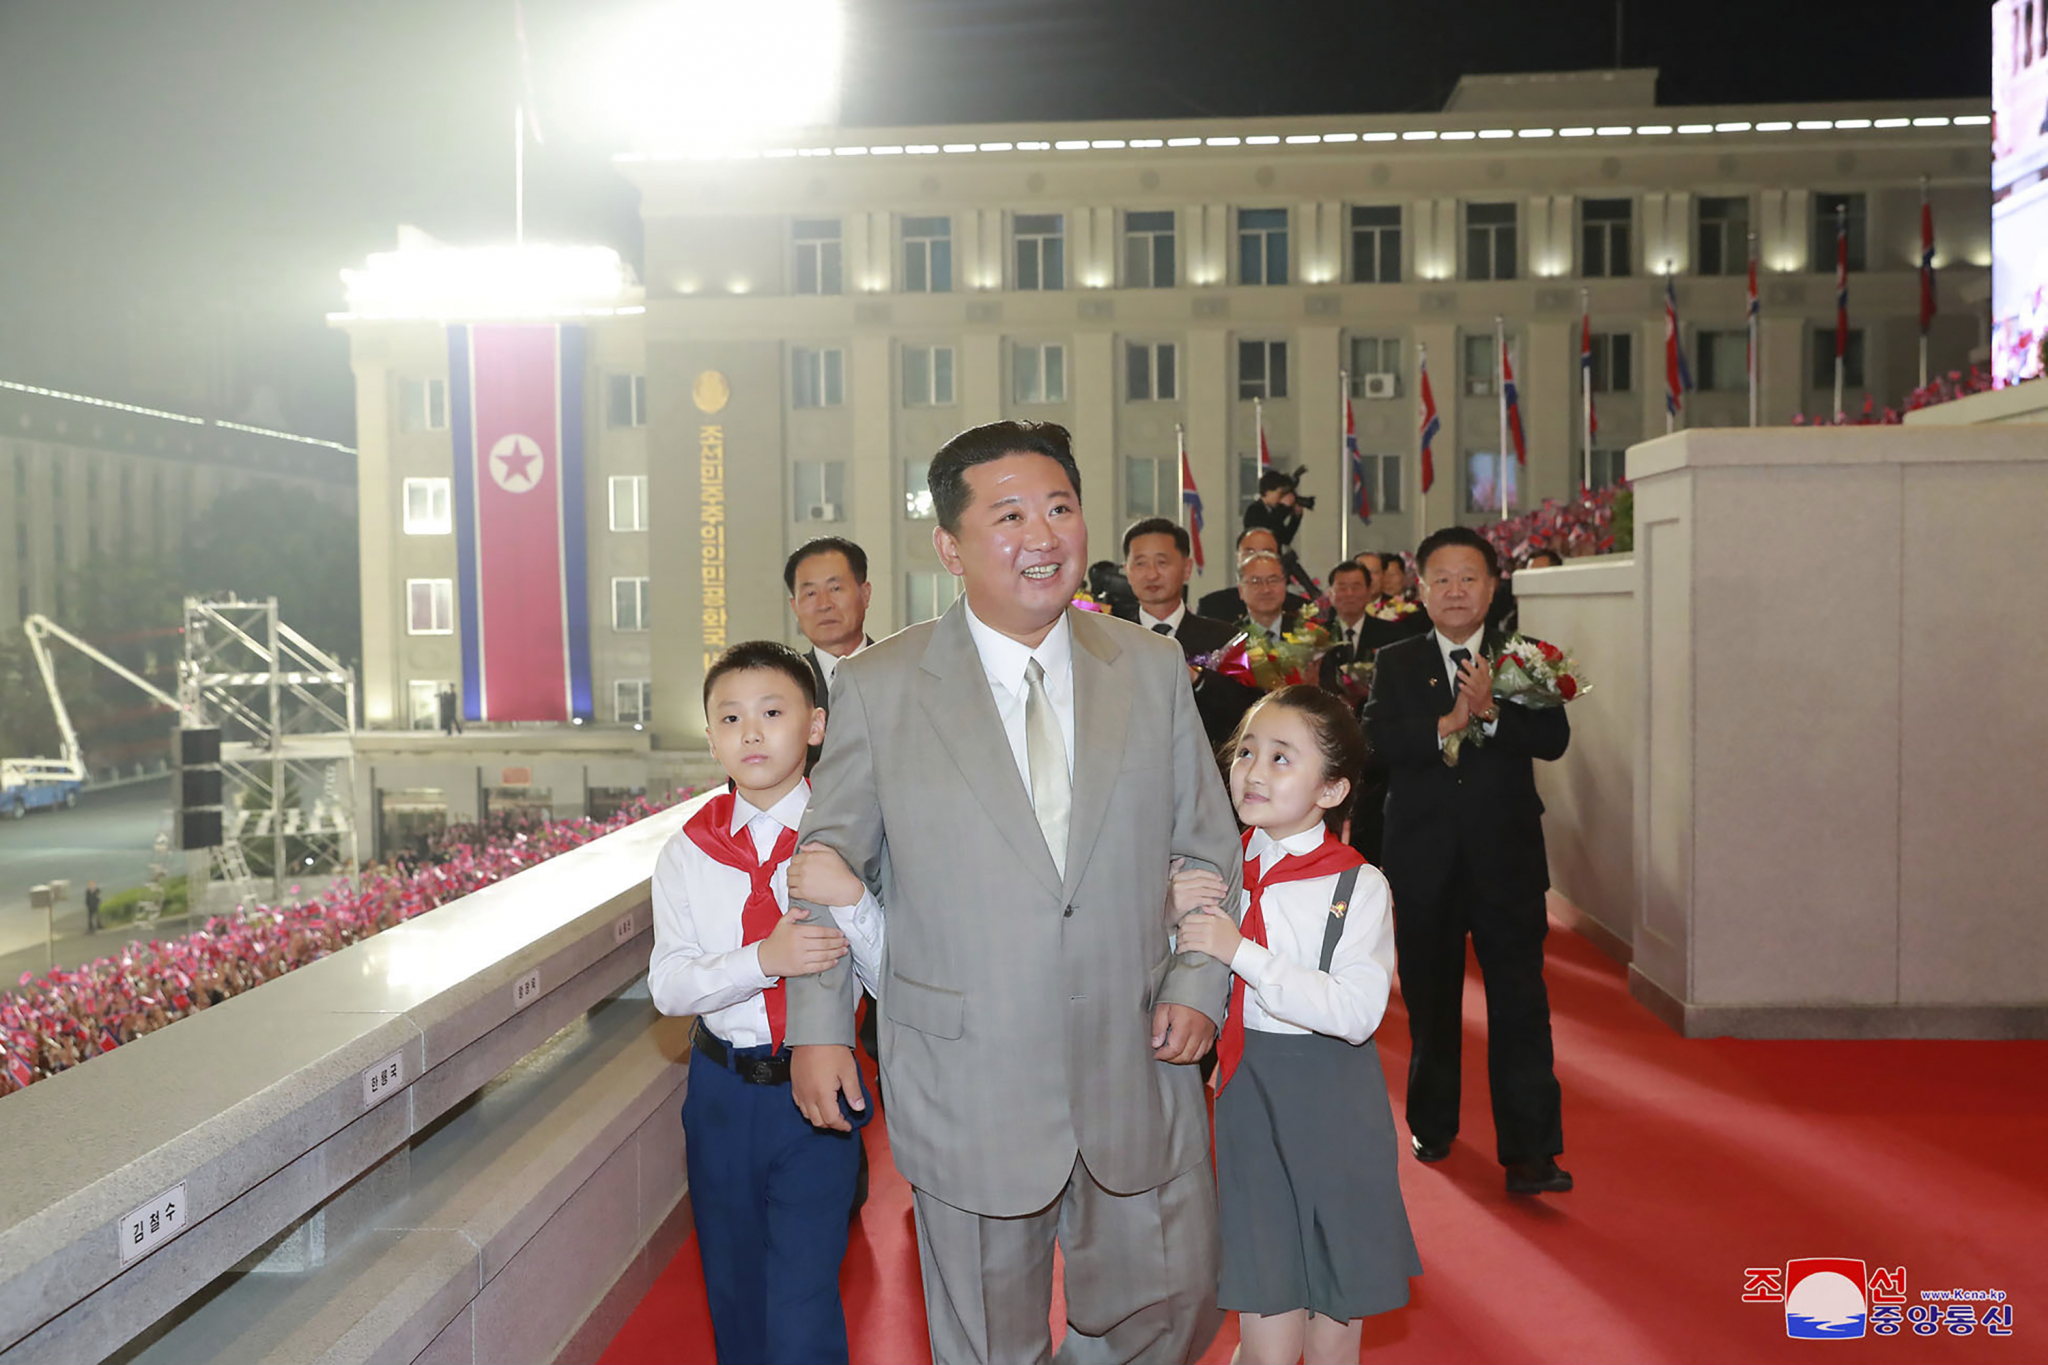 NEVERICA NA PARADI U SEVERNOJ KOREJI Kim drastično smršao, gas maske i zaštitna odela na vojnicima, raketa nigde (FOTO)